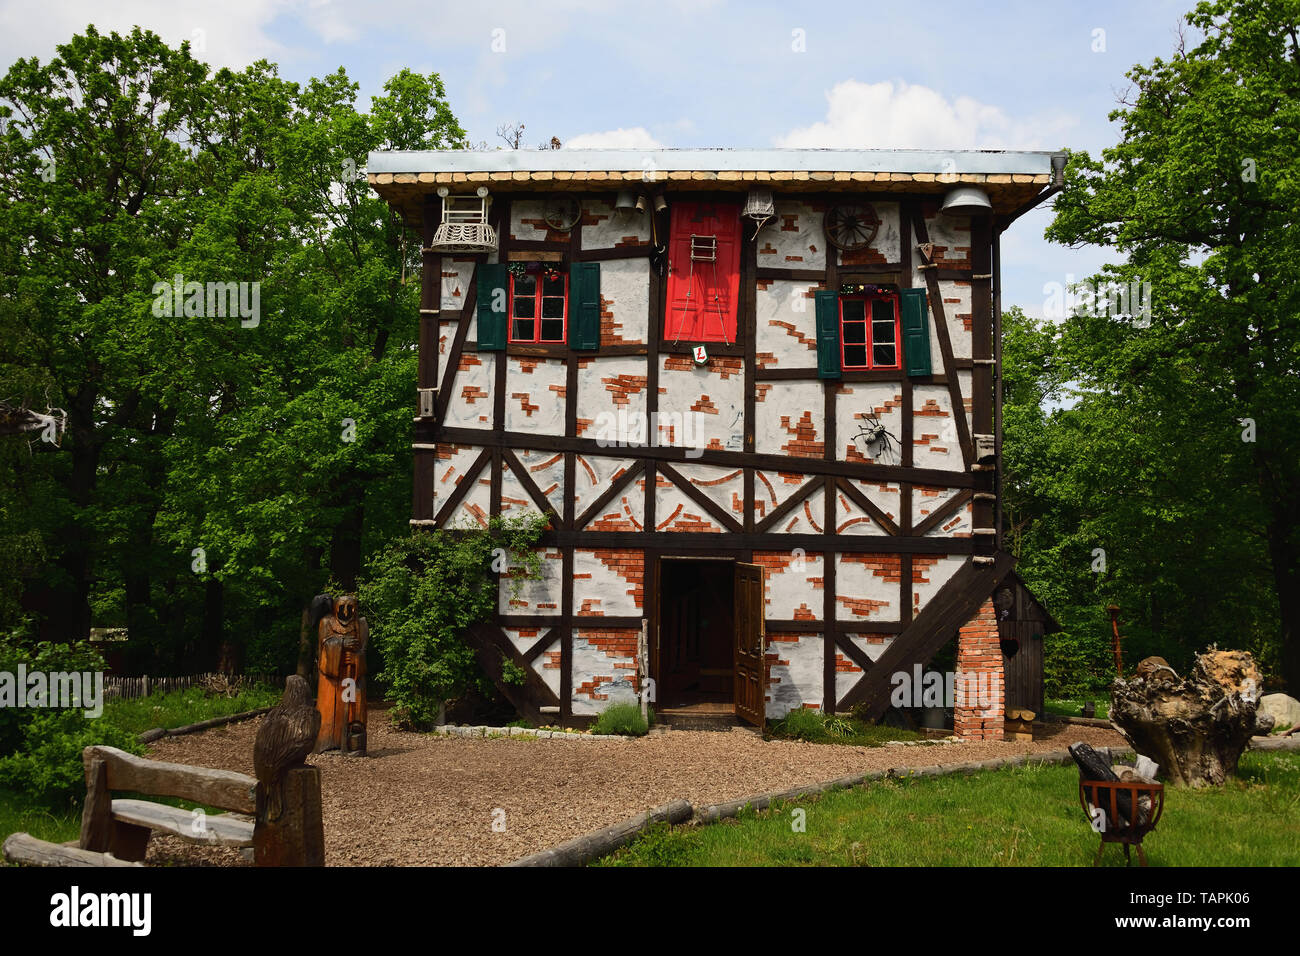 THALE, Sachsen - Anhalt, Deutschland - Mai 24, 2019: Witch's Cottage kopfüber an der Hexentanz Stock über Thale im Harz. Spaß für die ganze Familie. Stockfoto